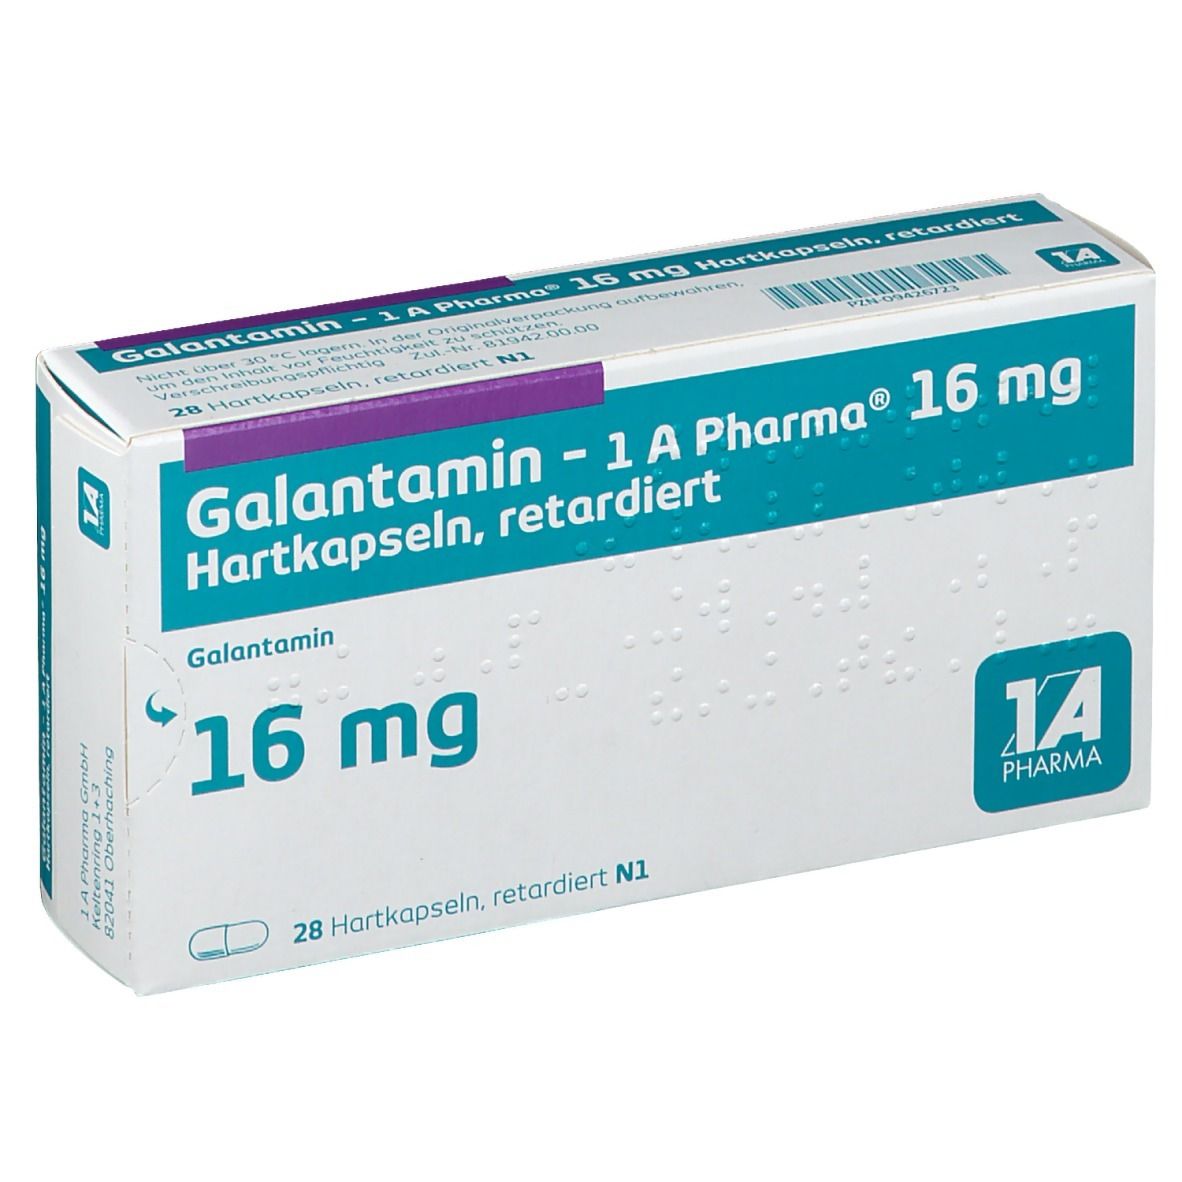 Galantamin - 1 A Pharma® 16 mg